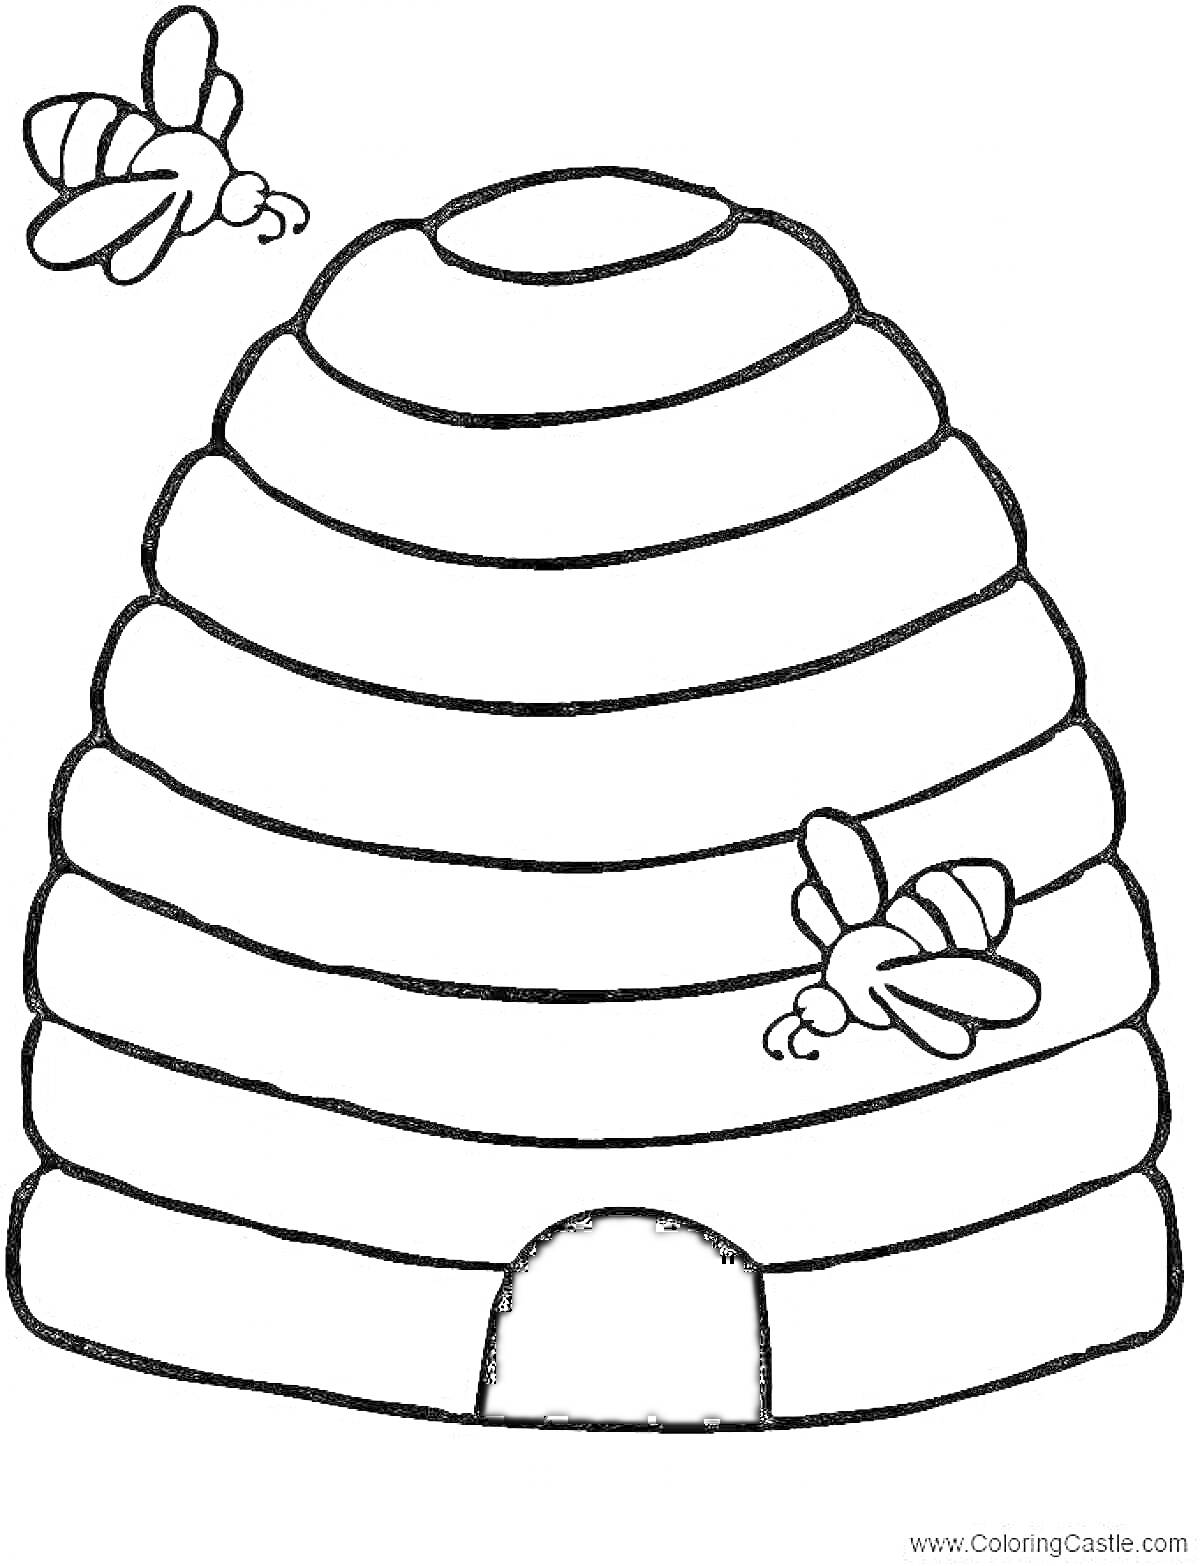 Раскраска Улей с пчелами